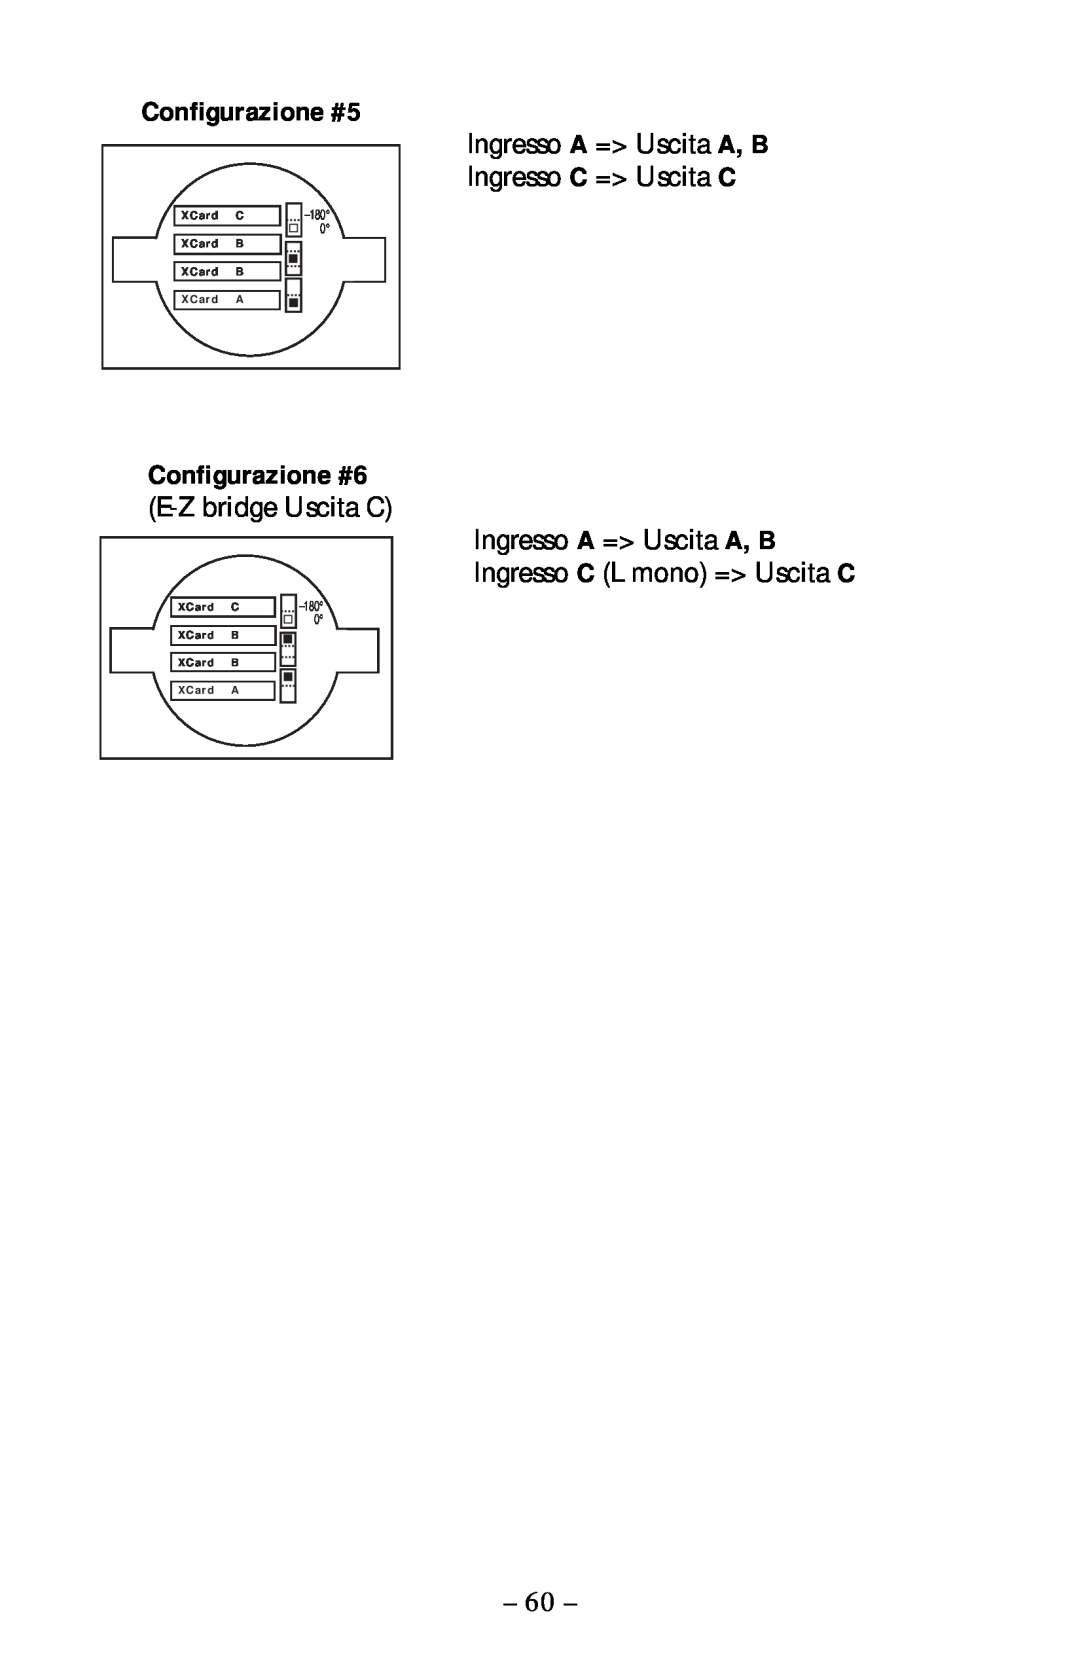 Rockford Fosgate 360.6 manual Configurazione #5, Configurazione #6 E-Zbridge Uscita C 